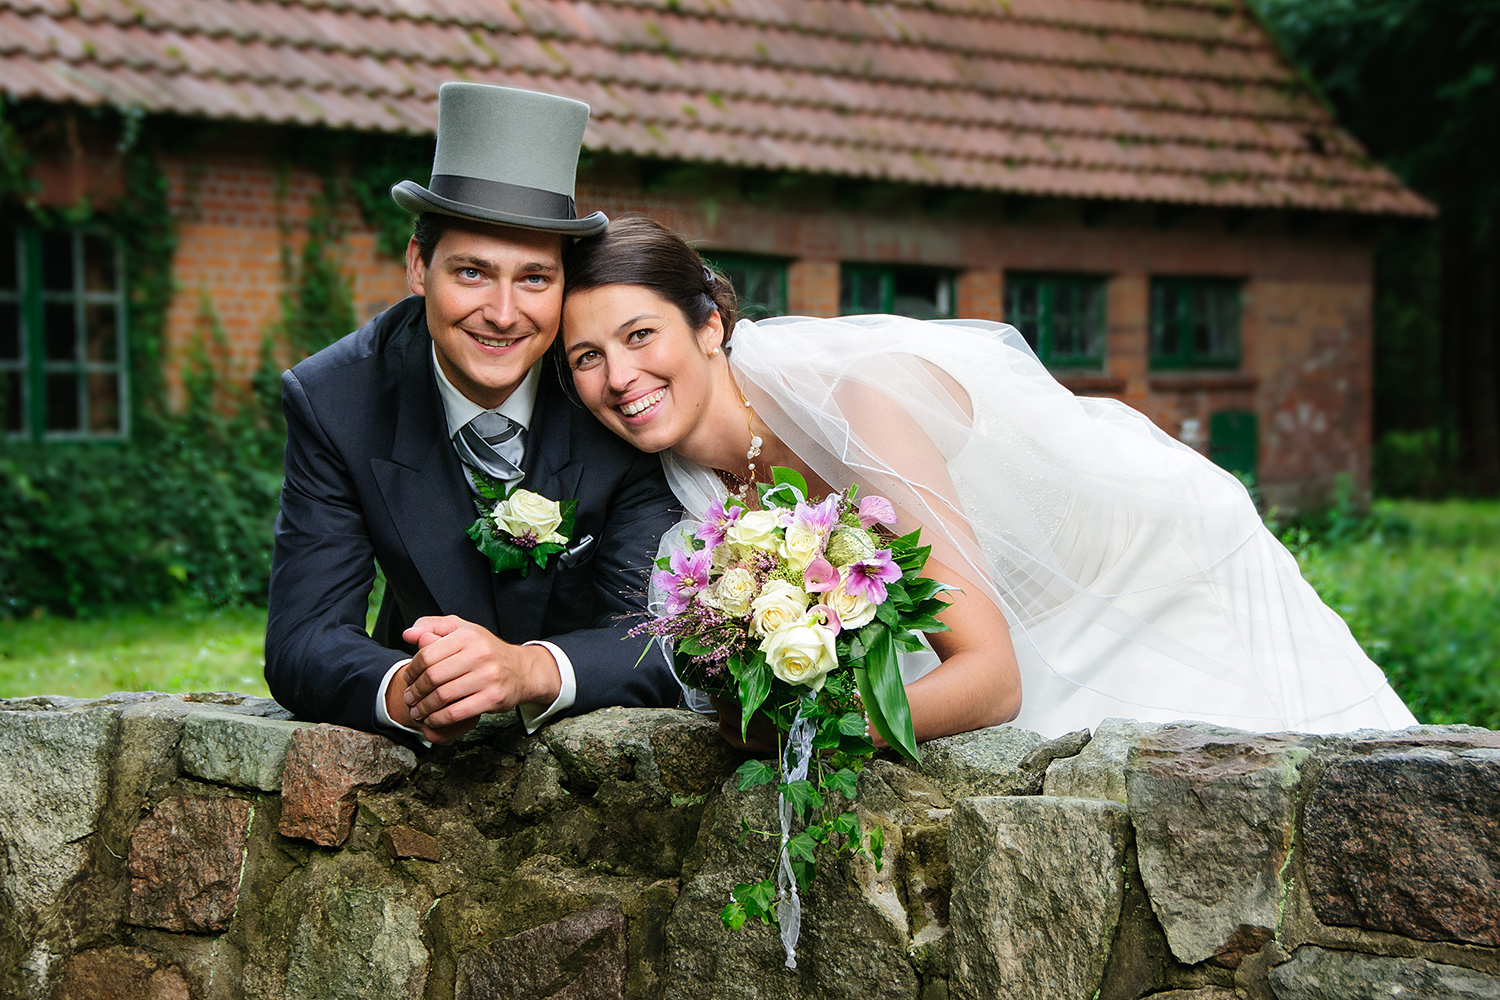 Fotograf für Hochzeiten, Brautpaar-Fotoshootings und Gruppenfotos in Münster